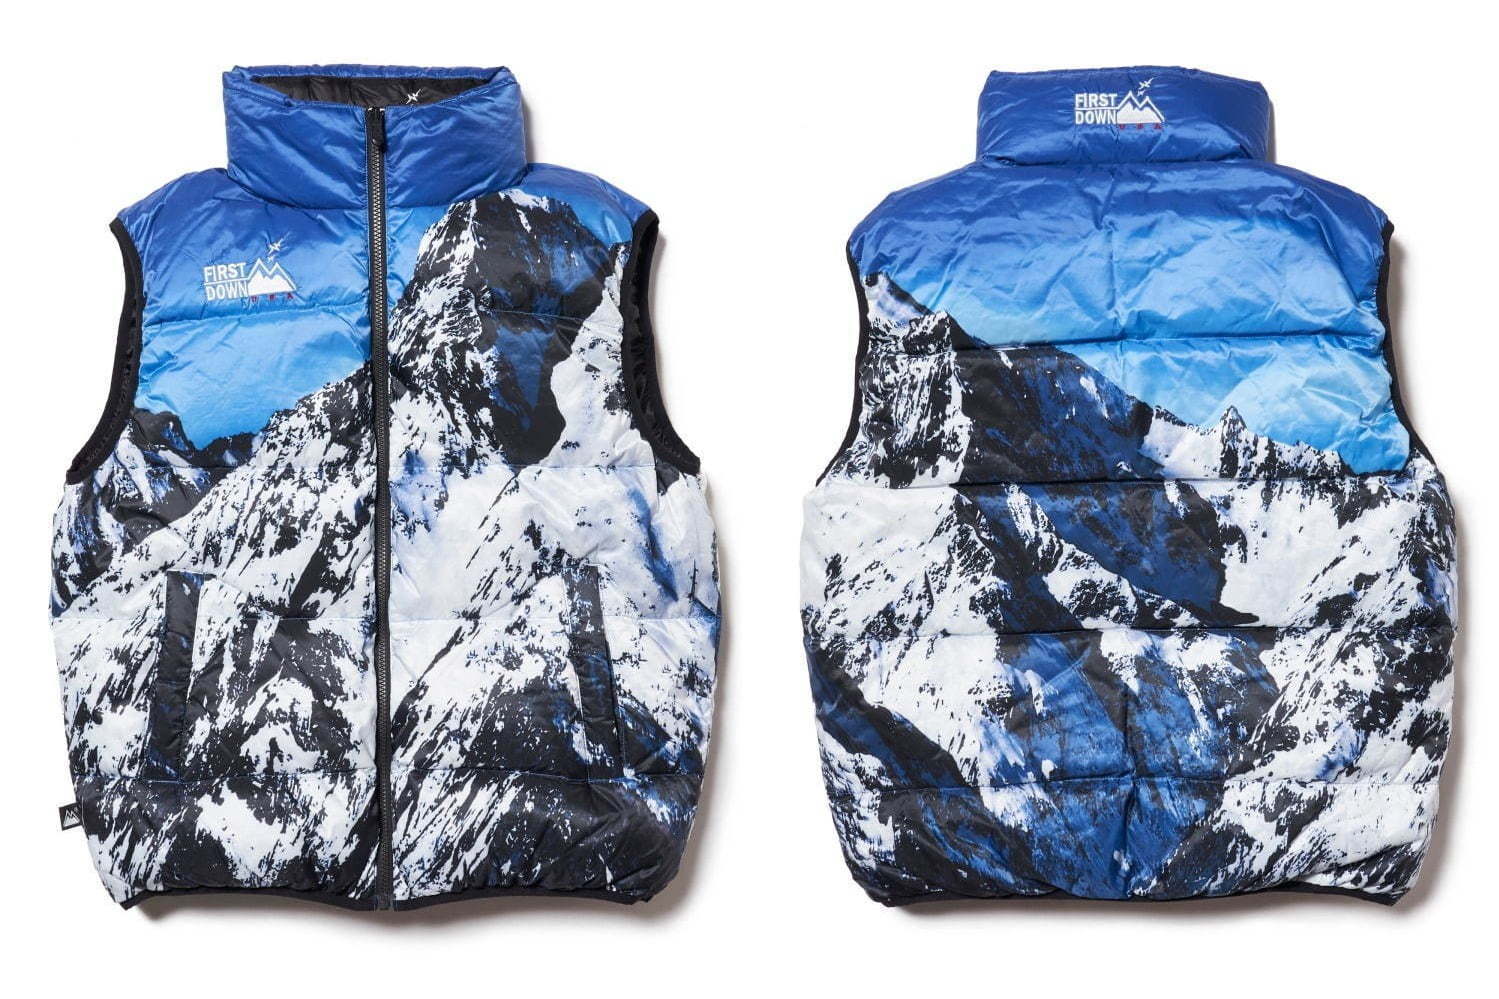 ウィズリミテッド×ファーストダウン“雪山”ダウンジャケットをリバーシブルベストとして限定発売 - ファッションプレス